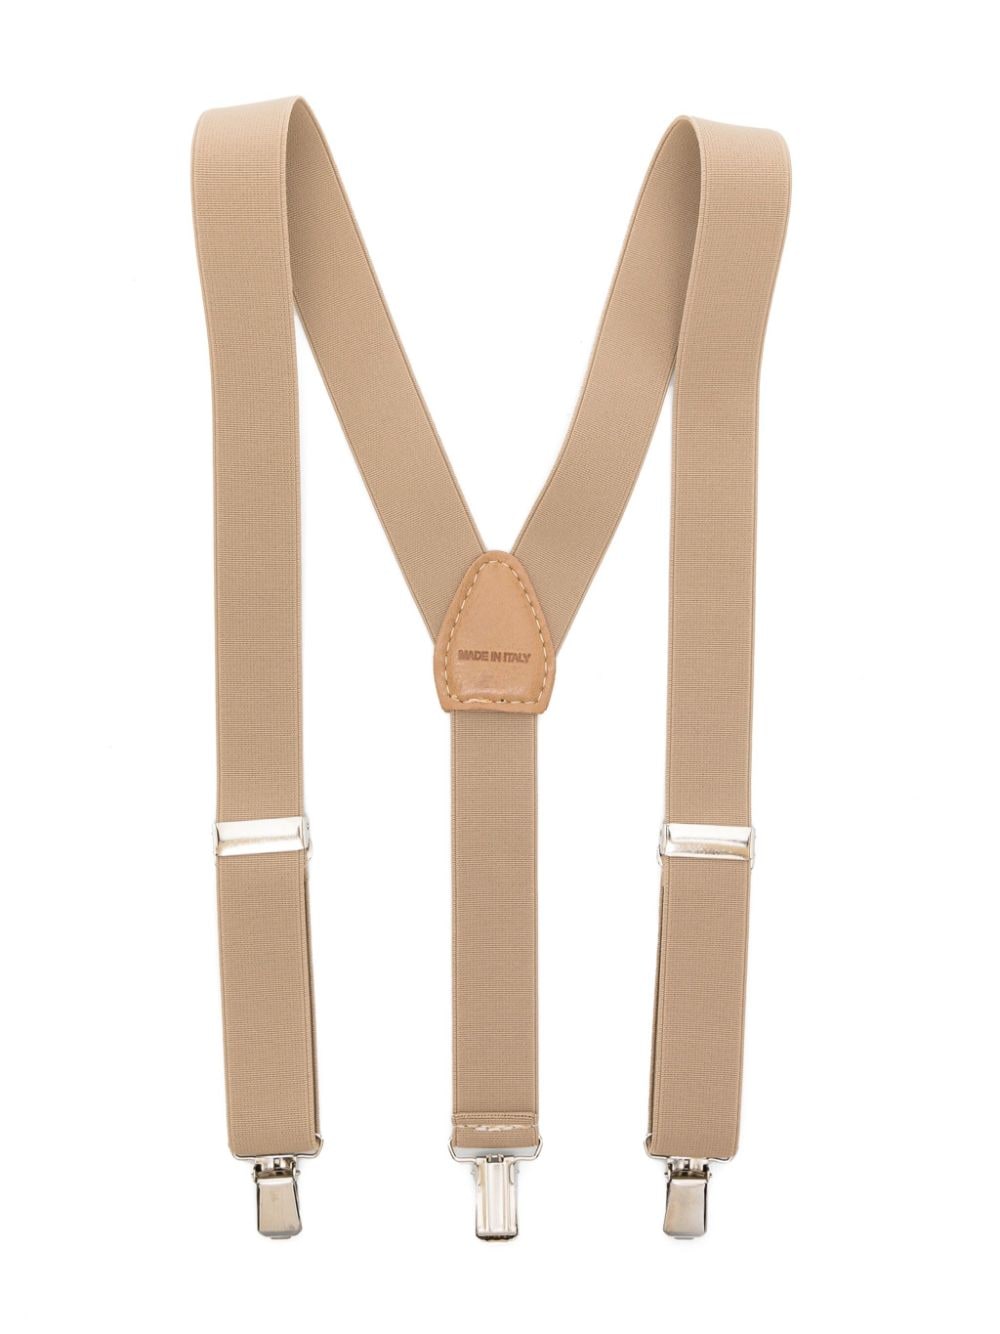 Beige suspenders for children